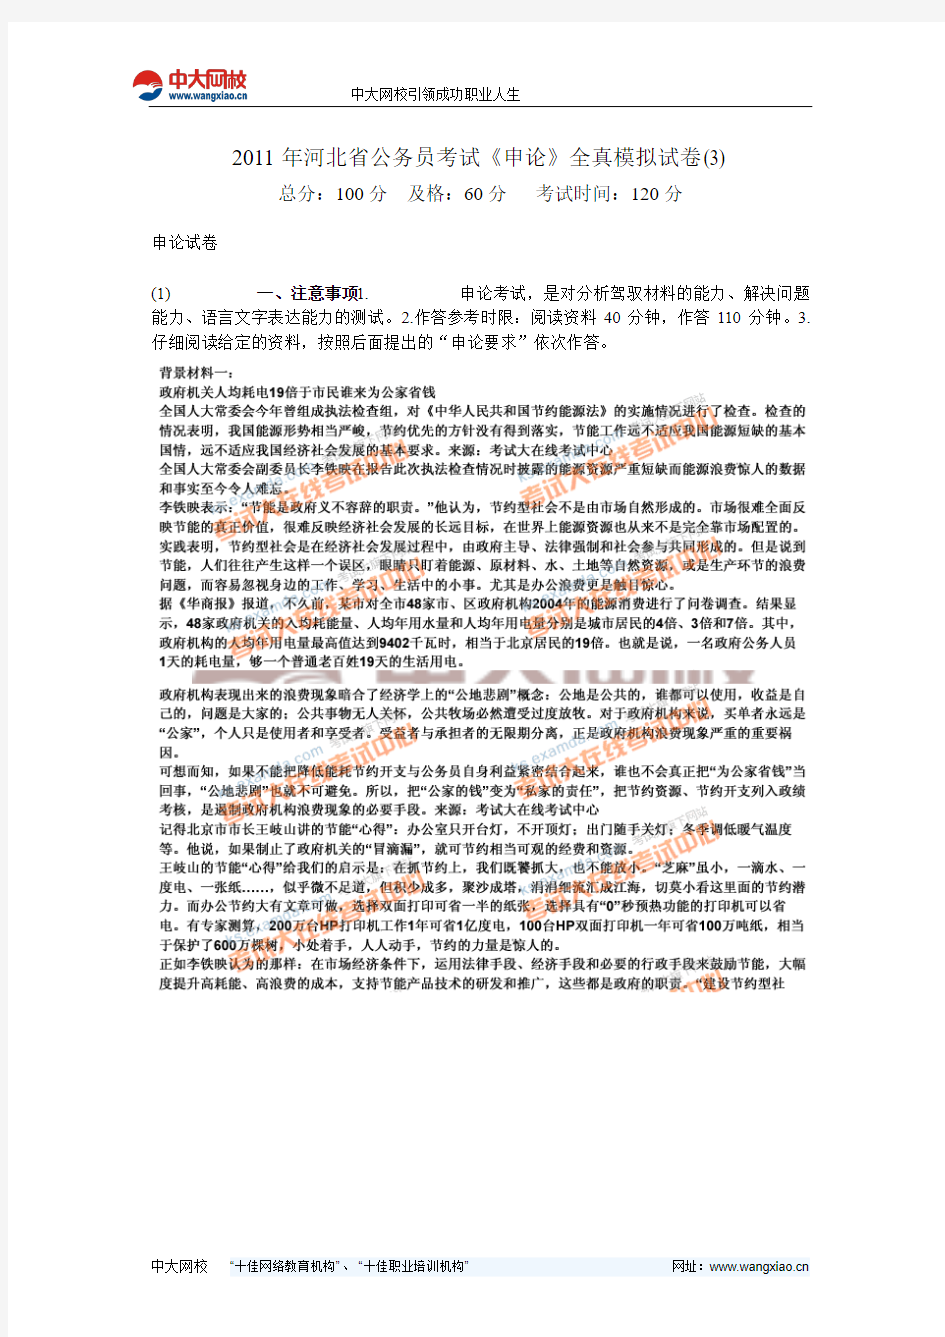 2011年河北省公务员考试《申论》全真模拟试卷(3)-中大网校